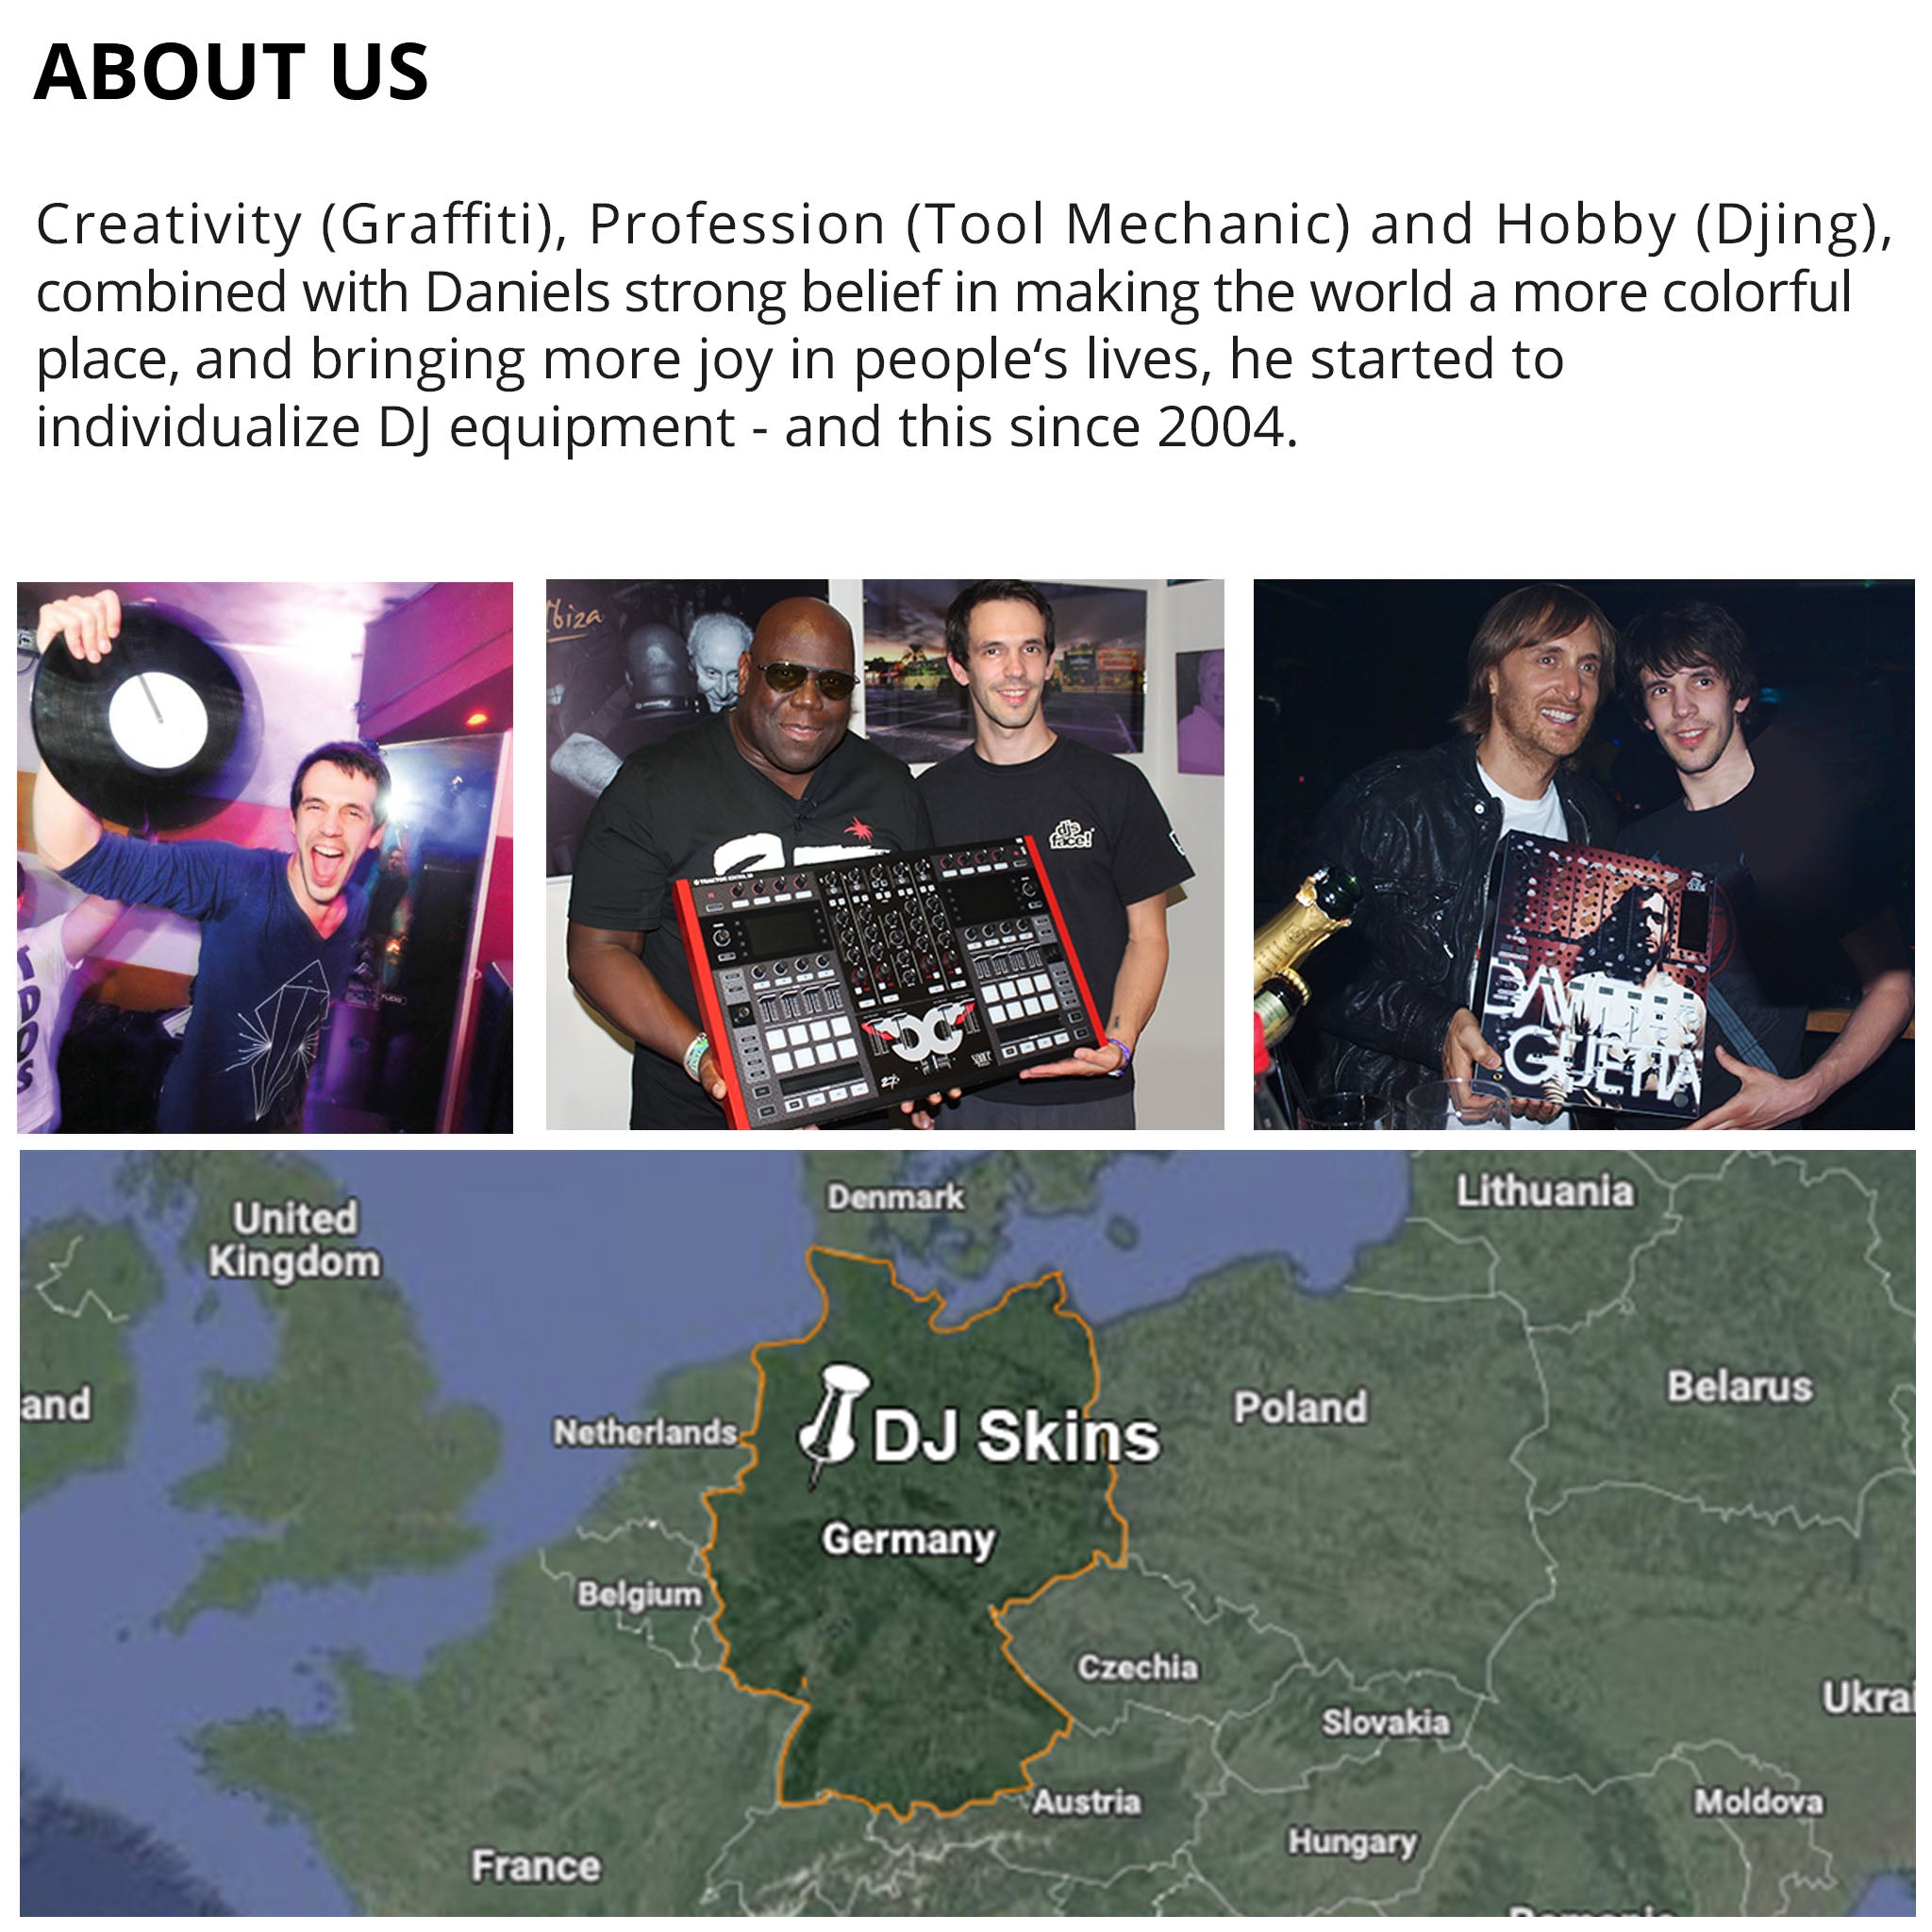 Pioneer DJ CDJ 900 Skin Steelay Red